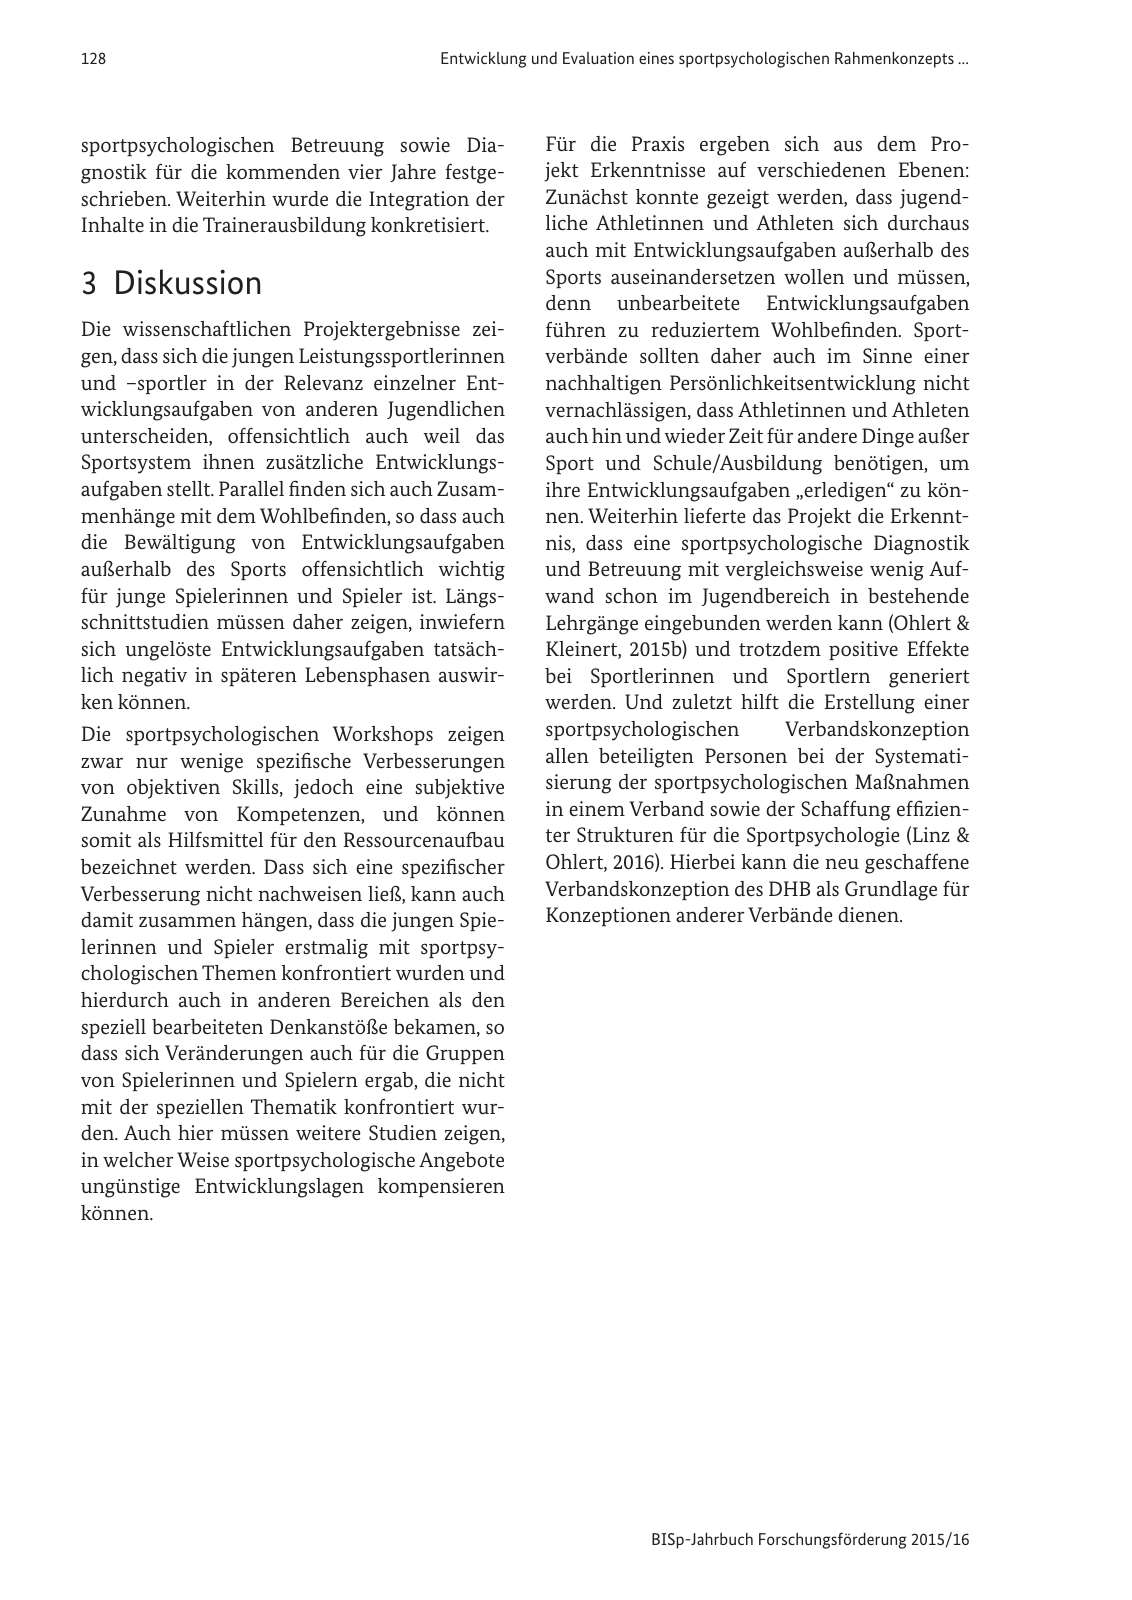 Vorschau BISp-Jahrbuch Forschungsförderung 2015/16 Seite 130